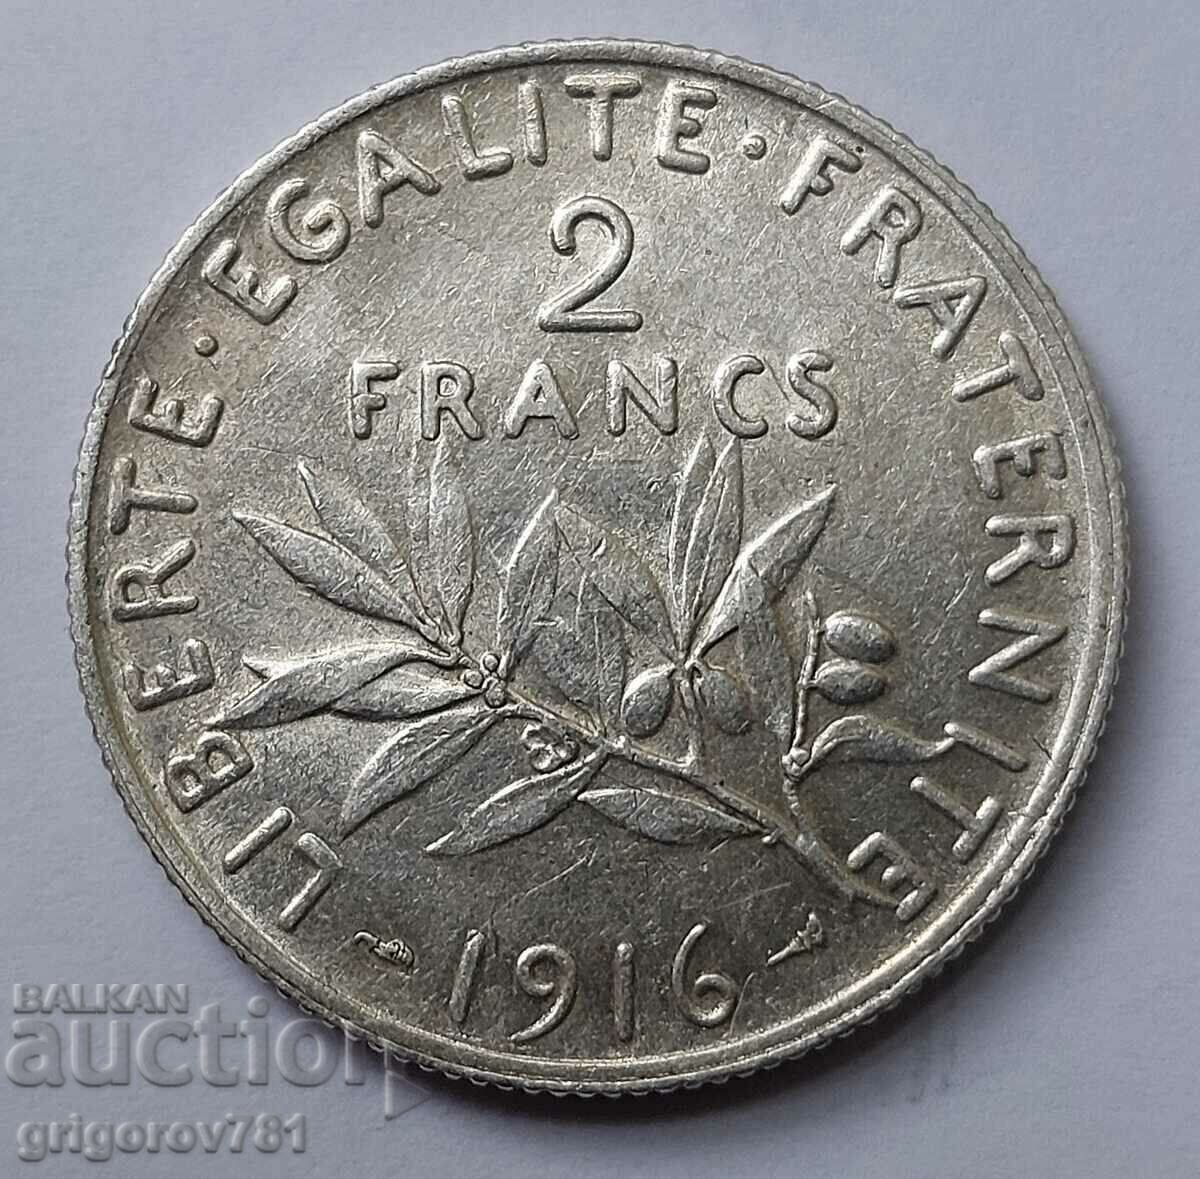 2 Φράγκα Ασημένιο Γαλλία 1916 - Ασημένιο νόμισμα #8